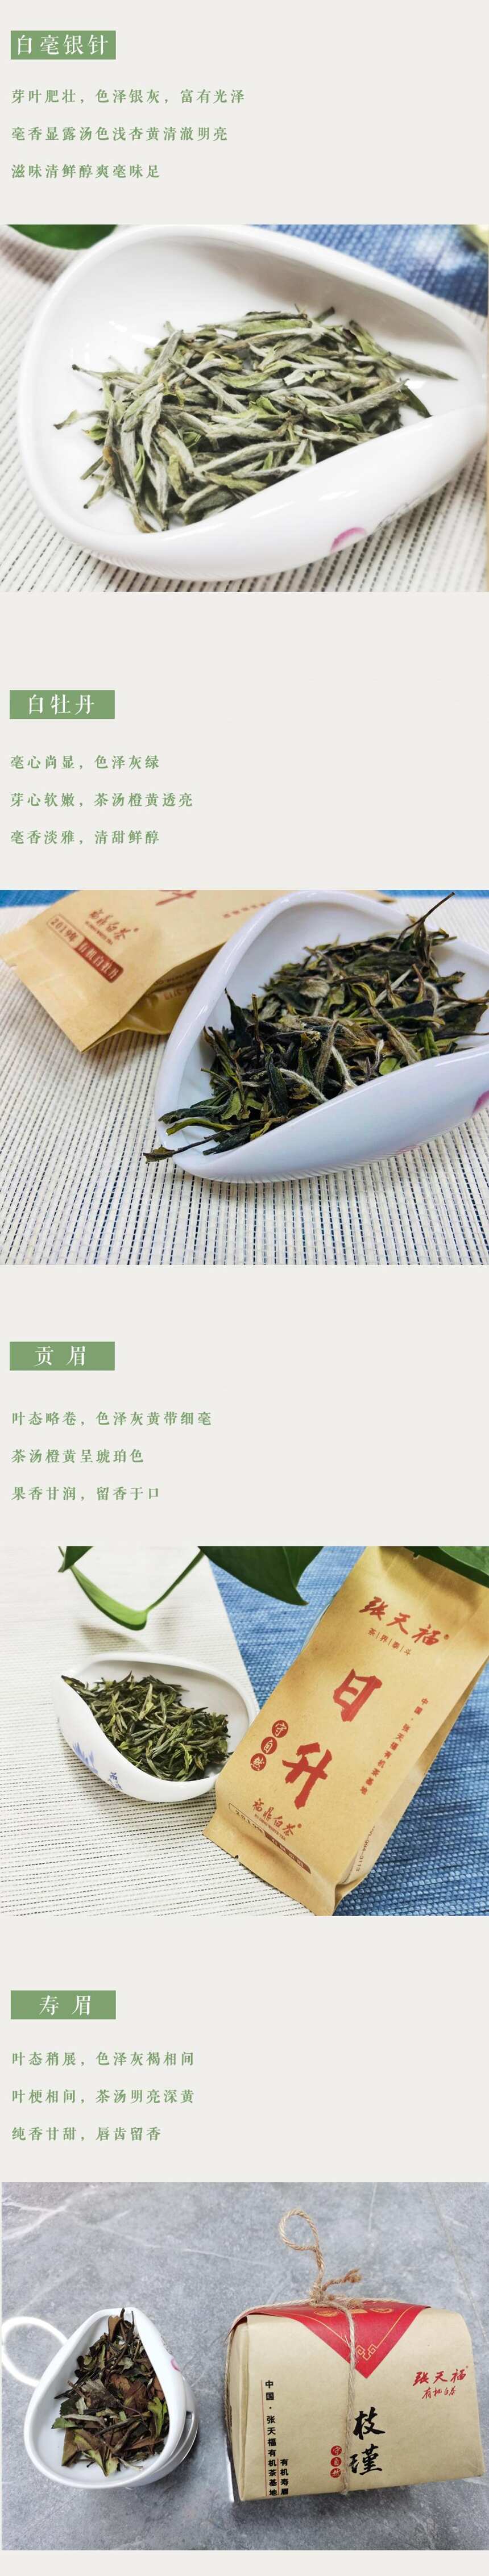 来自东方神奇的树叶「有机白茶」